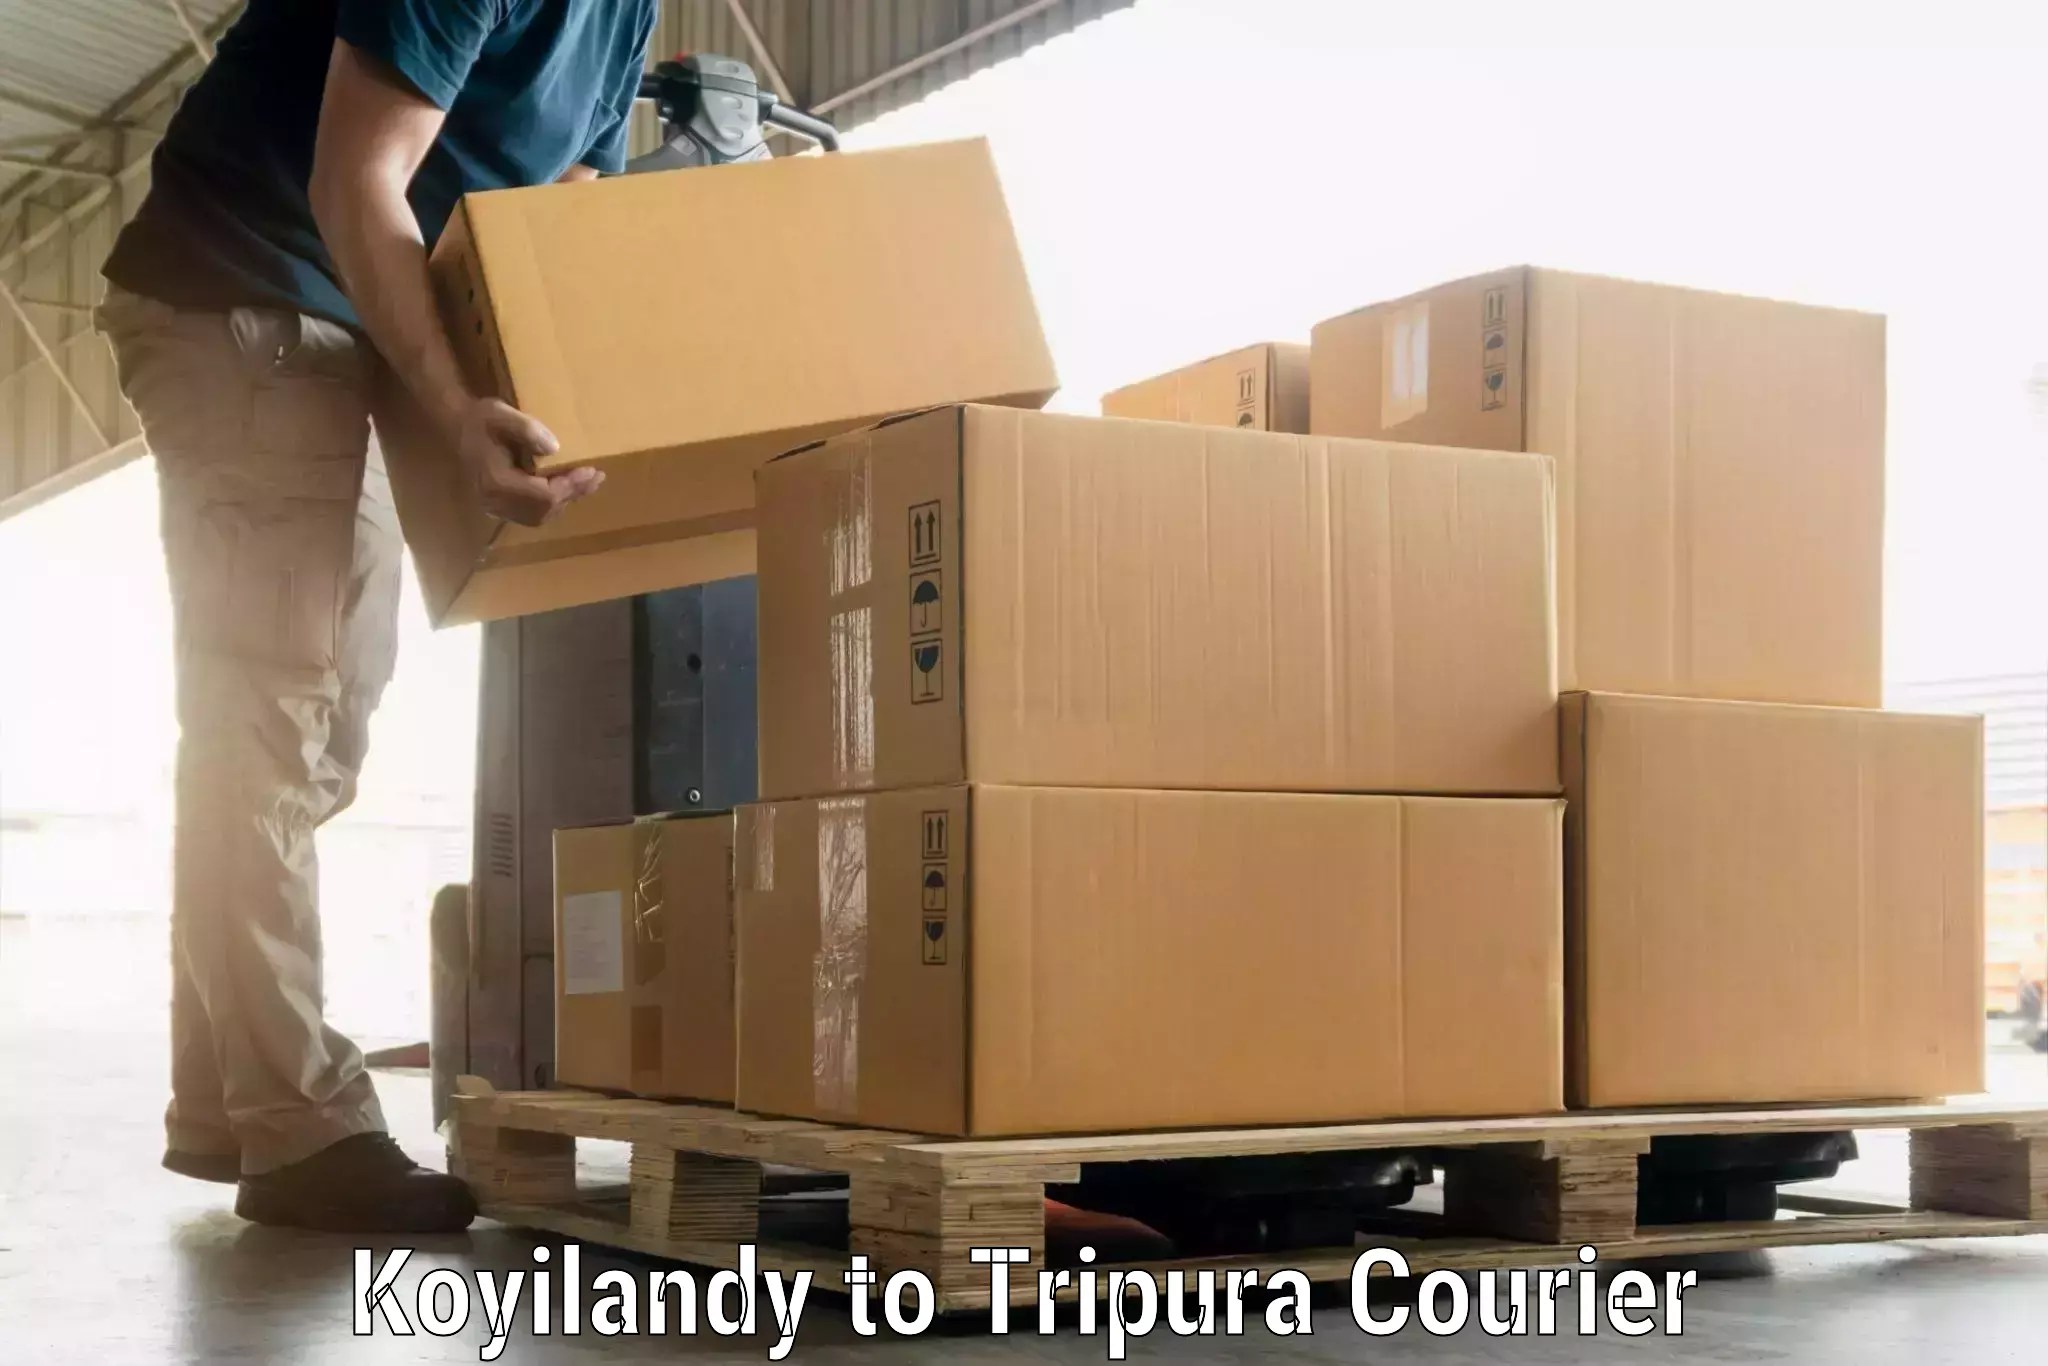 Luggage delivery estimate Koyilandy to Tripura